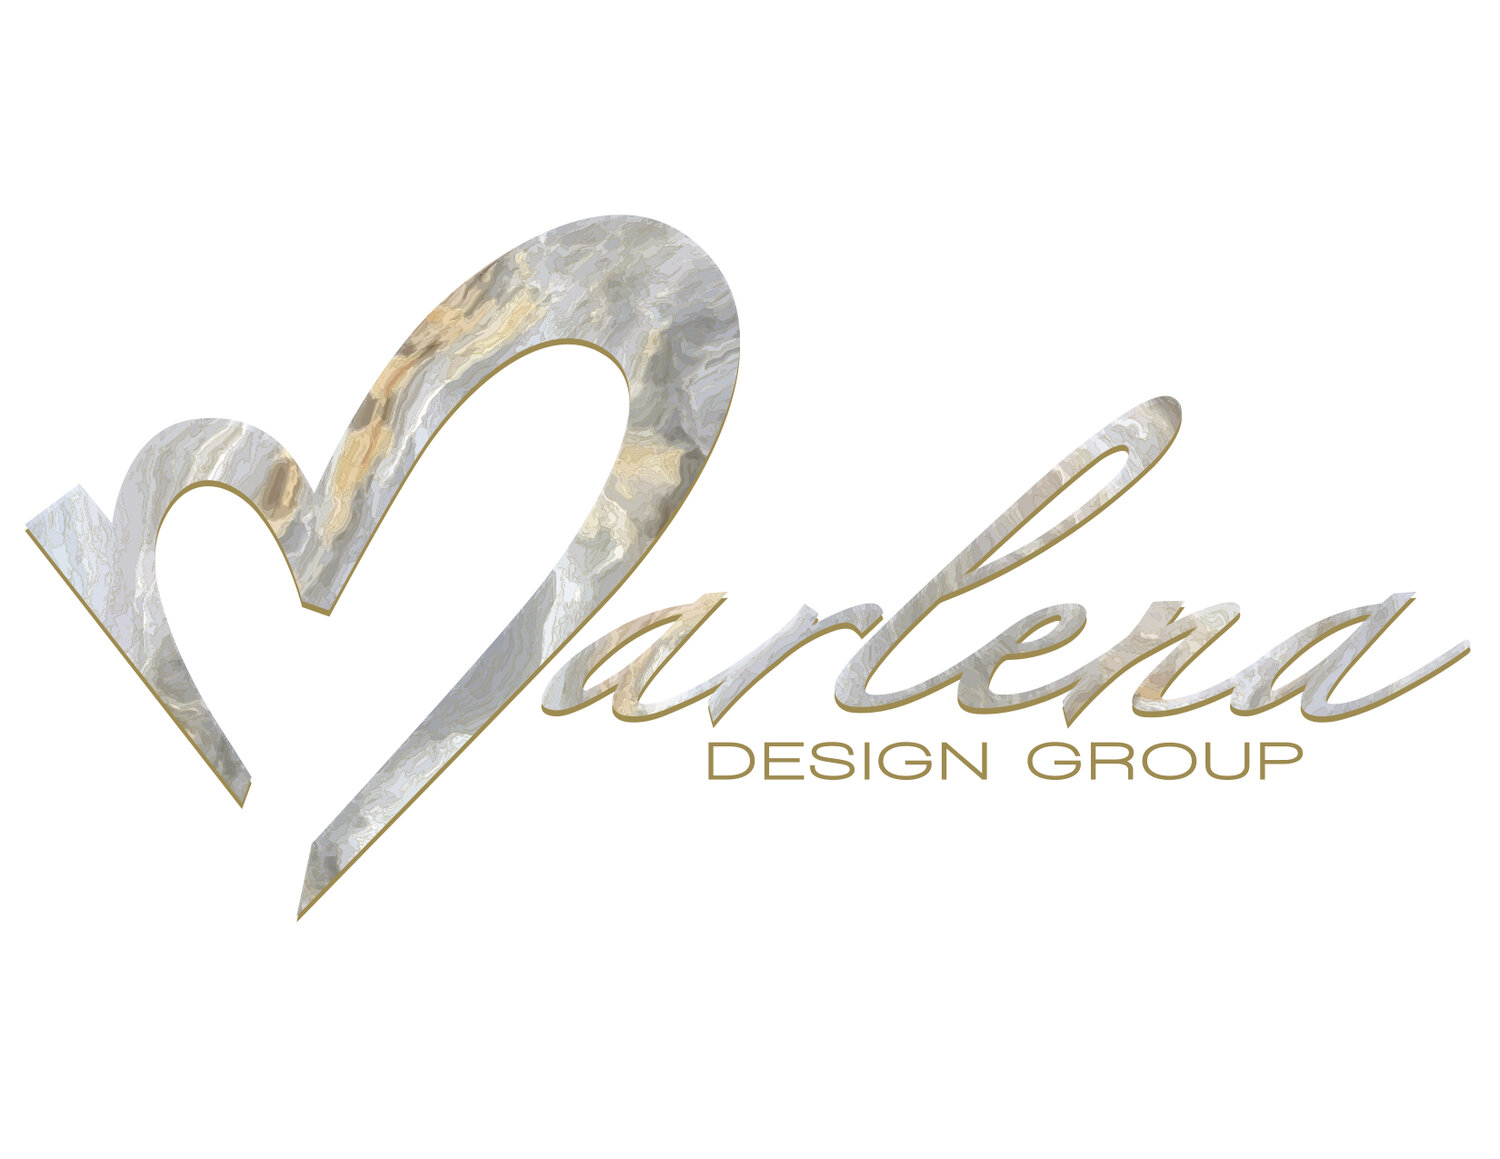 Marlena Design Group 